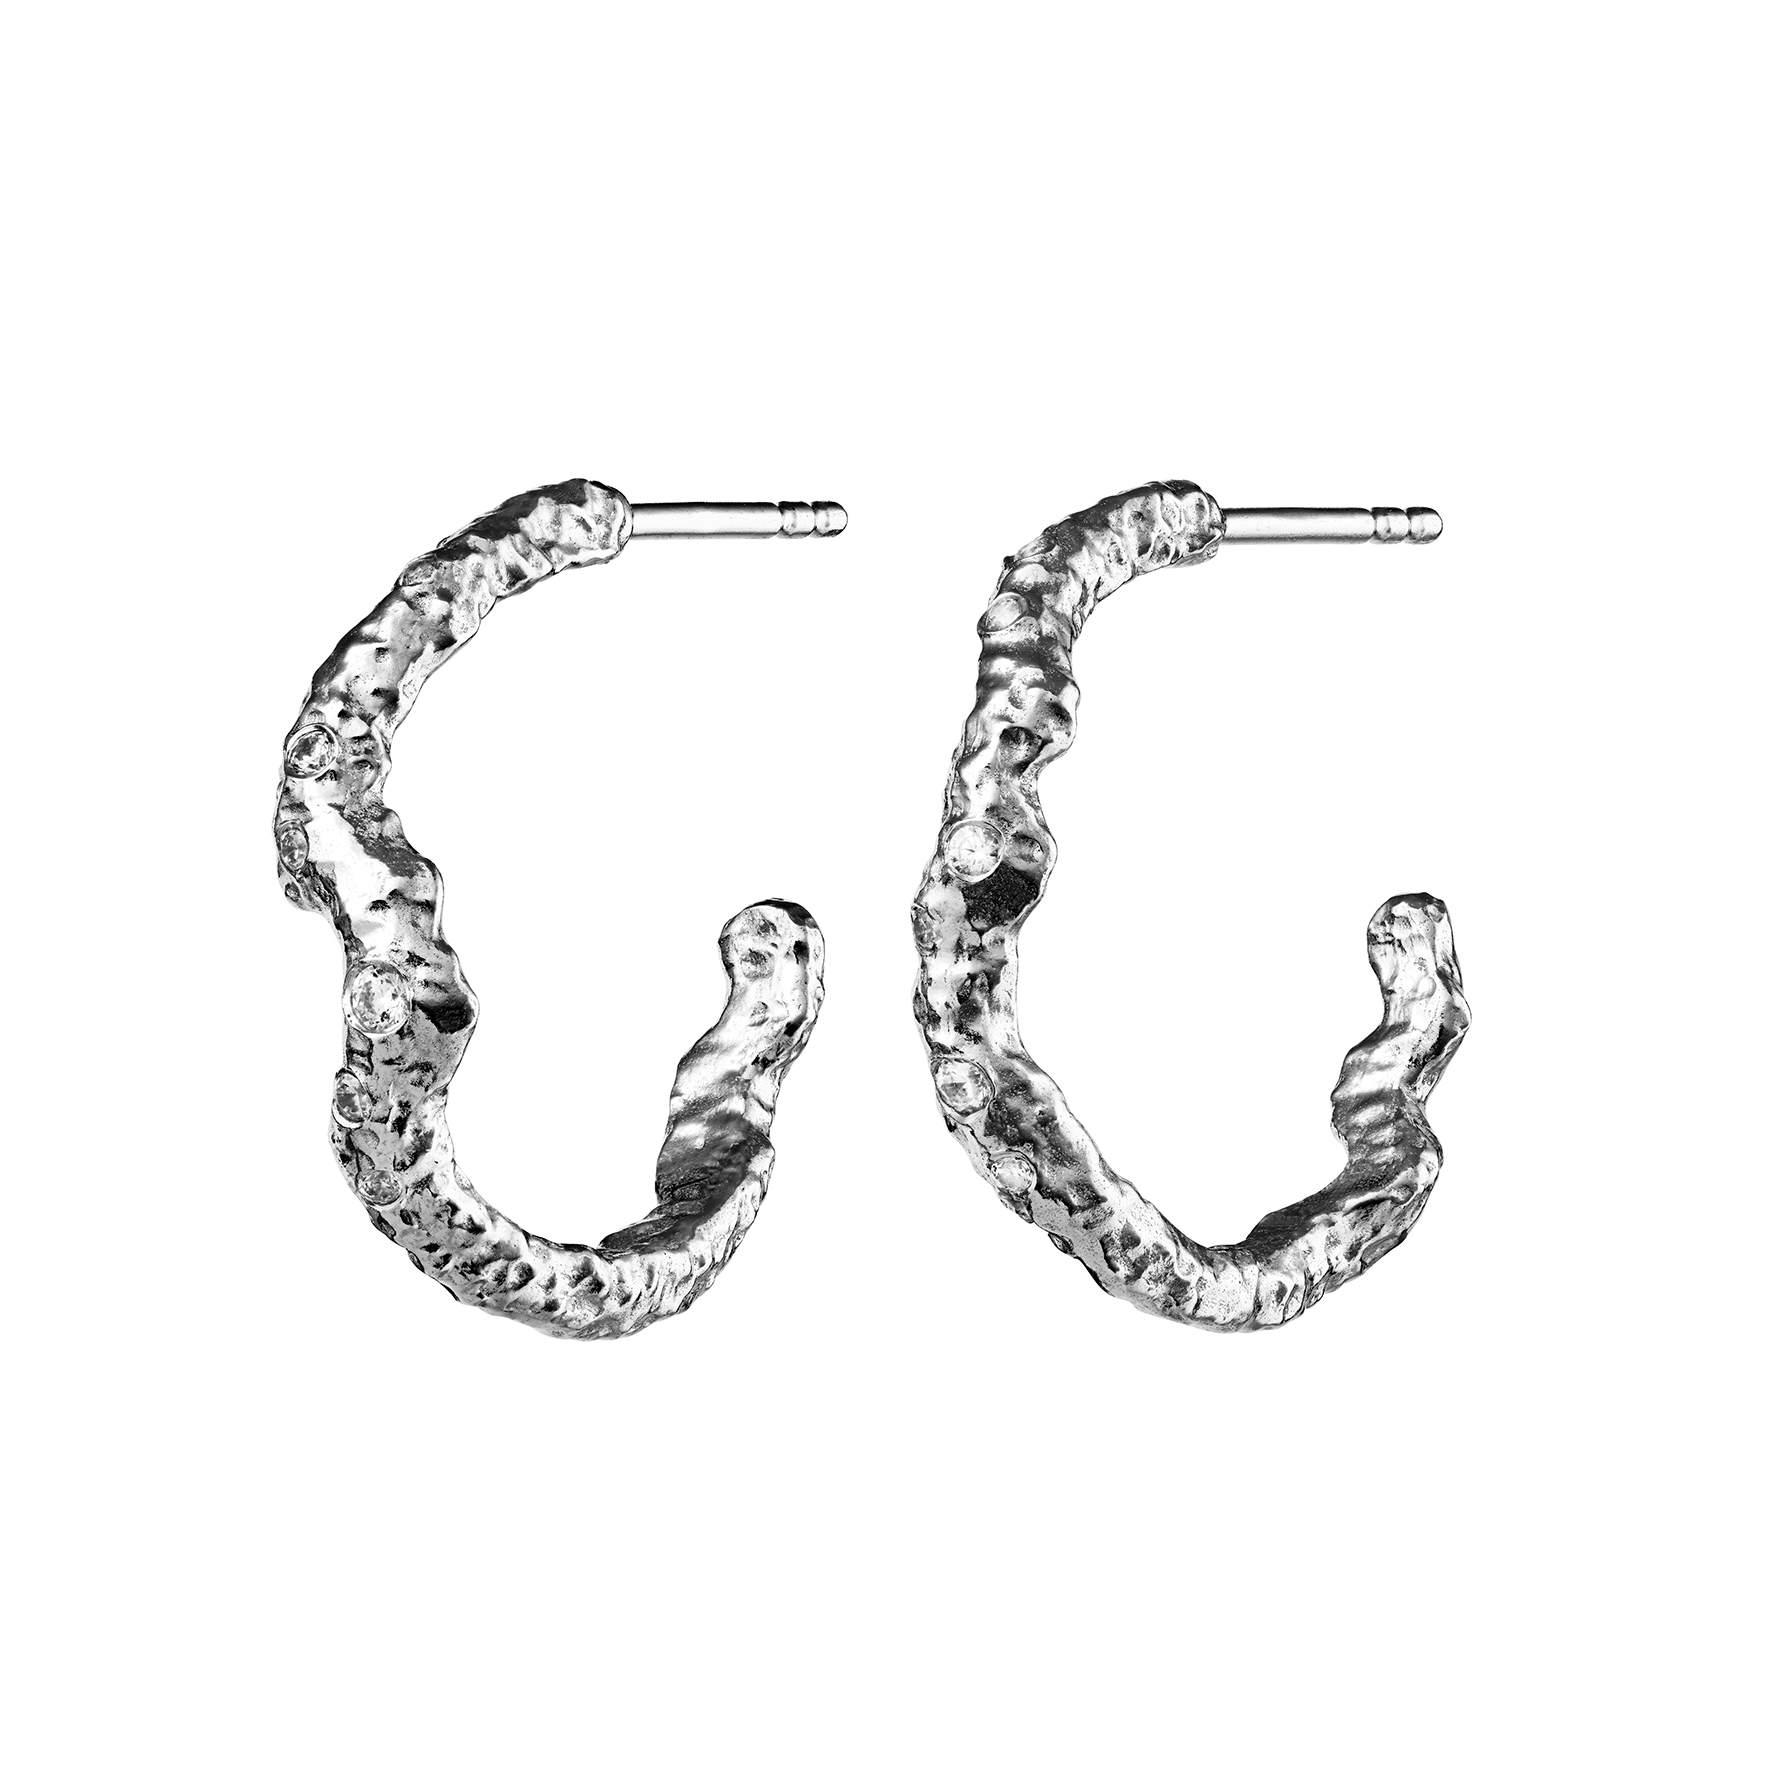 Janine Grande Earrings von Maanesten in Silber Sterling 925